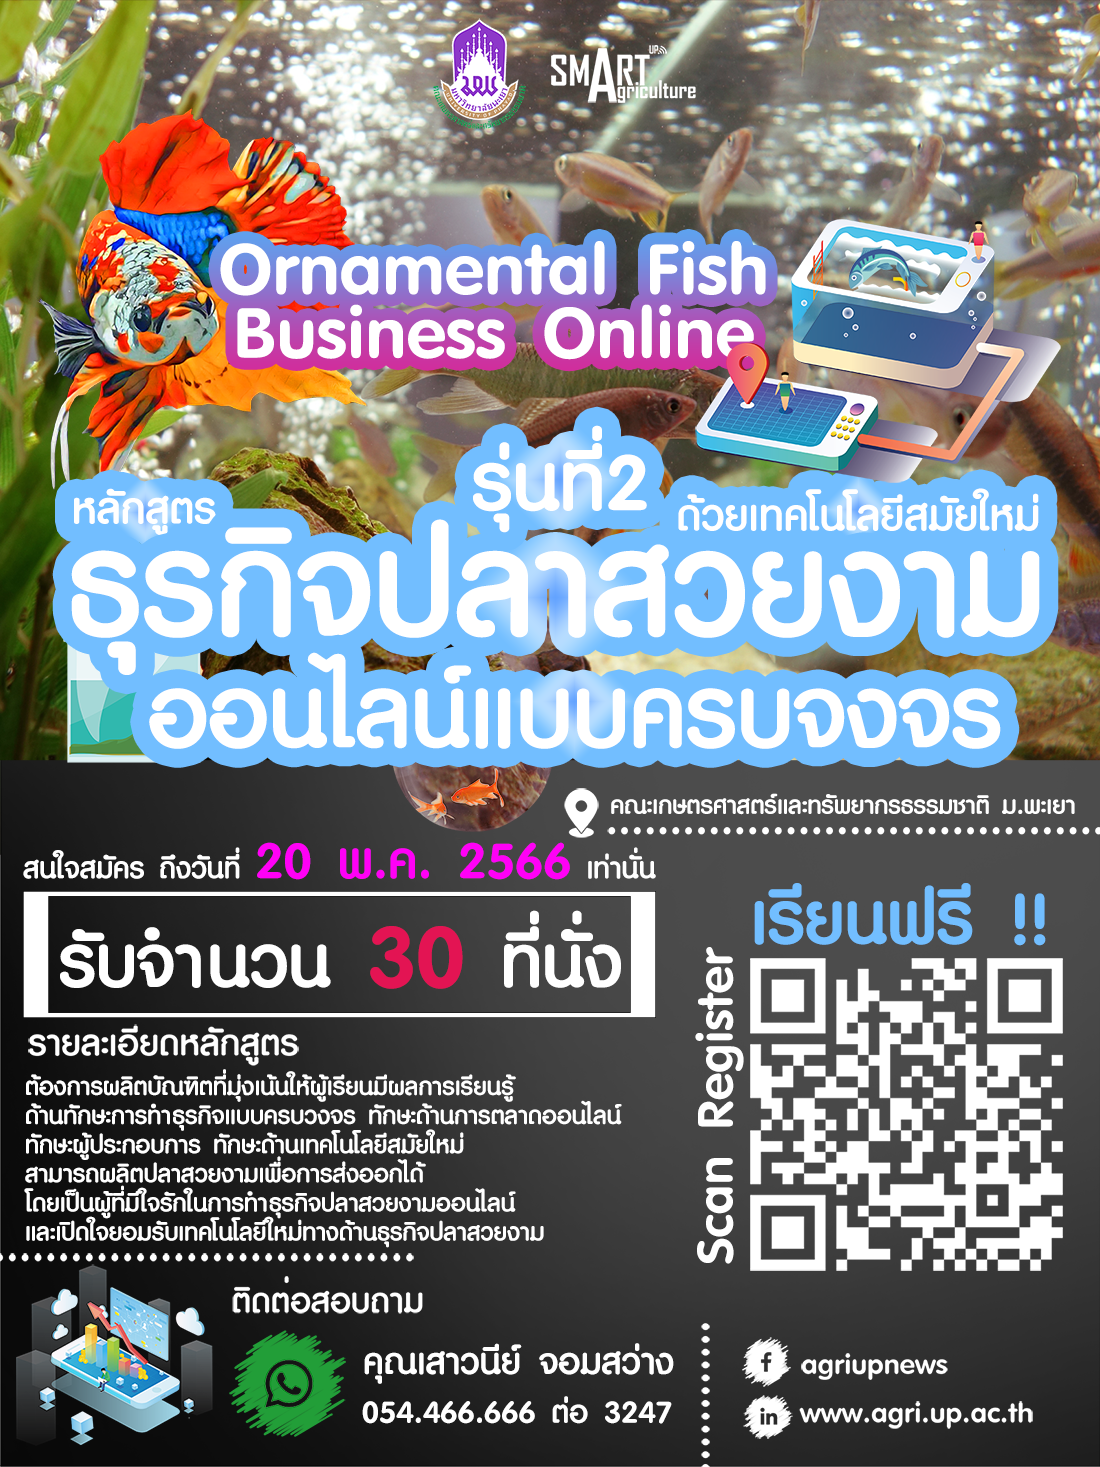 เปิดแล้ว !! หลักสูตรธุรกิจปลาสวยงามออนไลน์แบบครบวงจรด้วยเทคโนโลยีสมัยใหม่ รุ่นที่ 2 Ornamental Fish Business Online ( รับจำนวน 30 ที่นั่ง เท่านั้น )